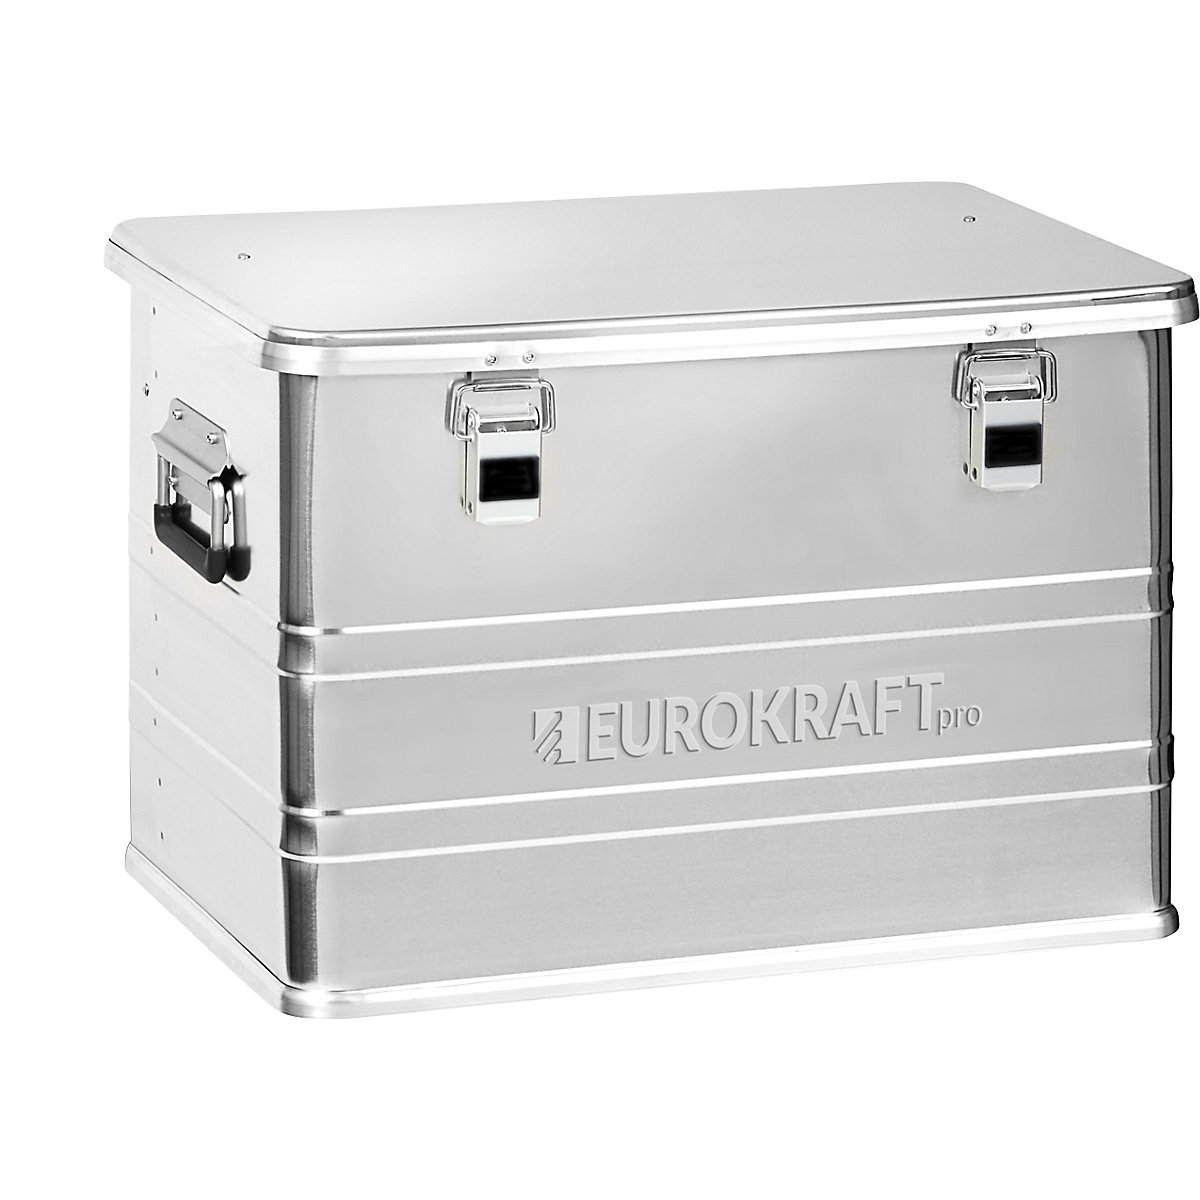 Industry aluminium container – eurokraft pro